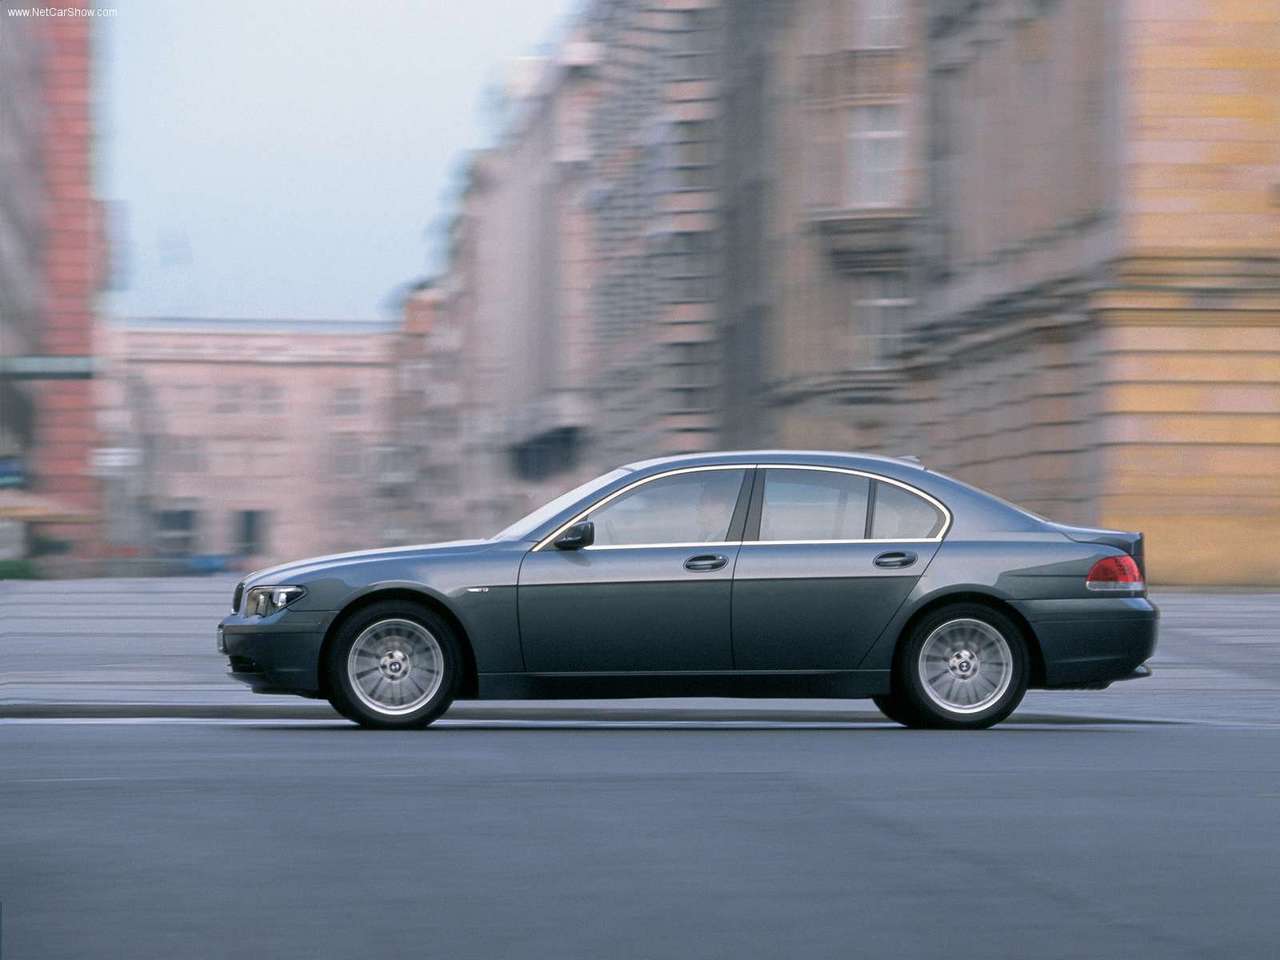 BMW - Auto twenty-first century: 2002 BMW 730d